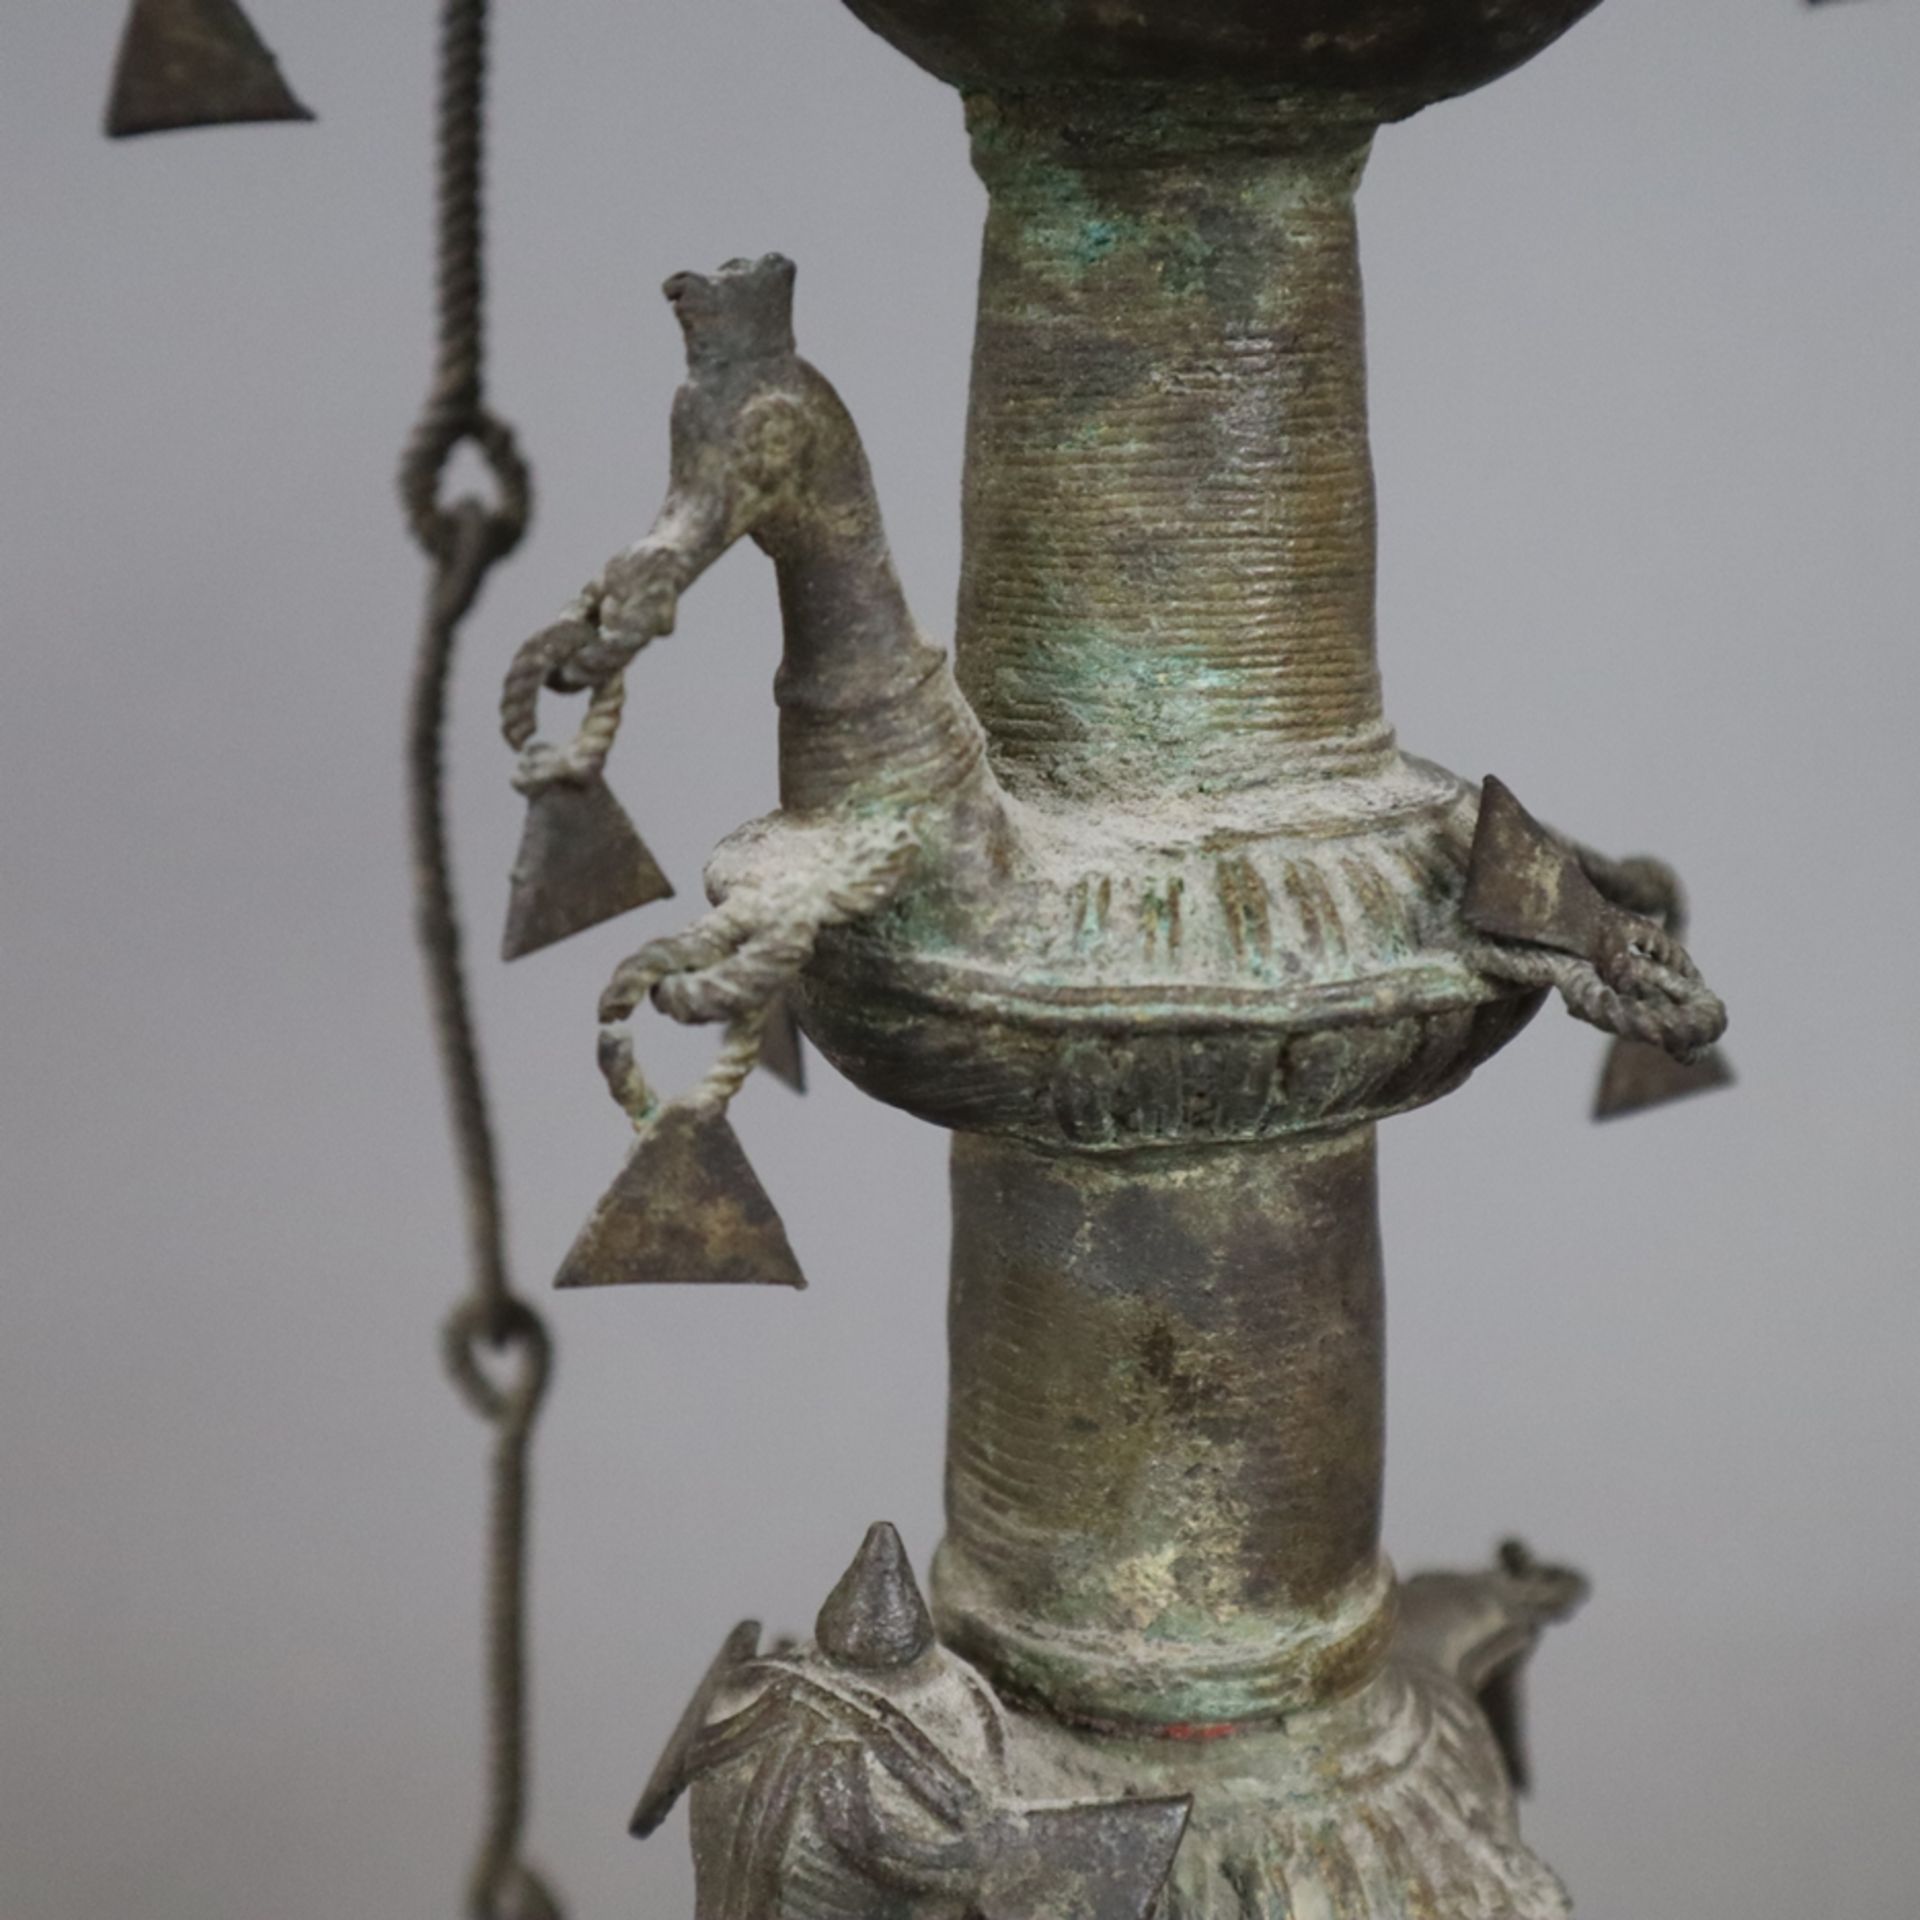 Hohe Öllampe - Indien, Bastar-Region, Bronze mit Alterspatina, über gewölbtem Fuß gegliederter Scha - Bild 5 aus 9